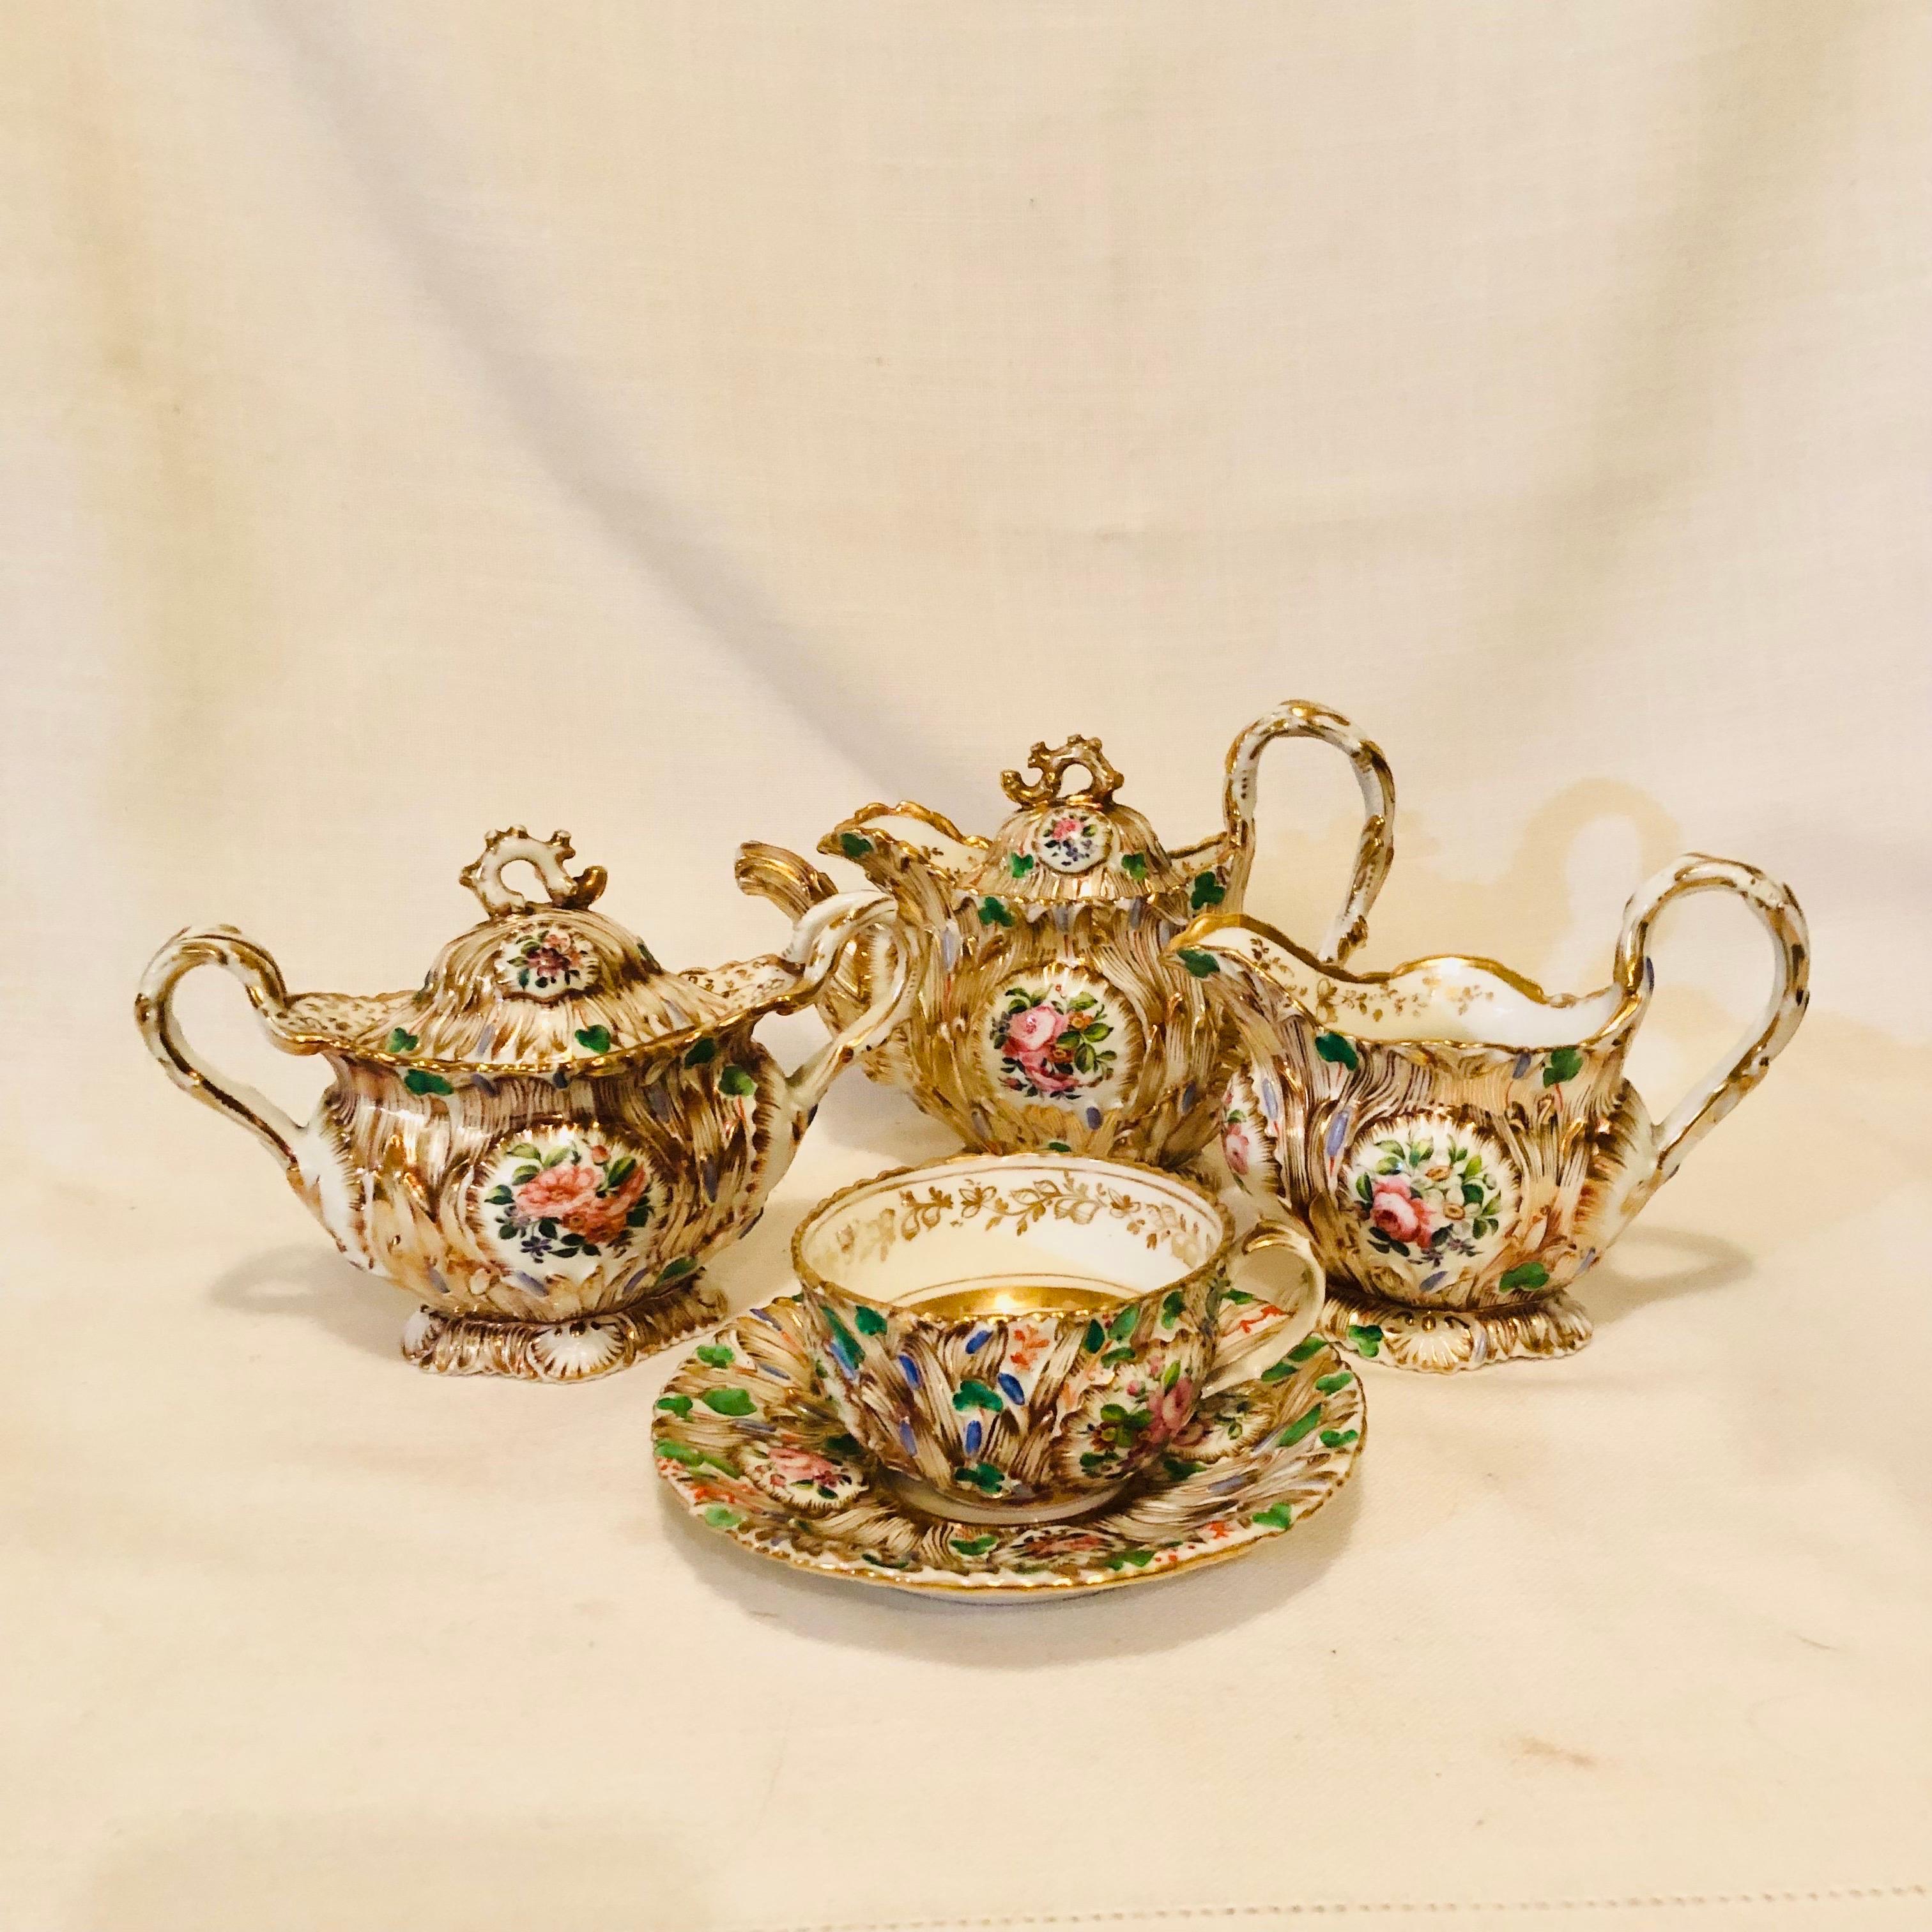 Jacob Petit Paris Porcelain Tea Set with Gilt and Colorful Rococo Decoration For Sale 3